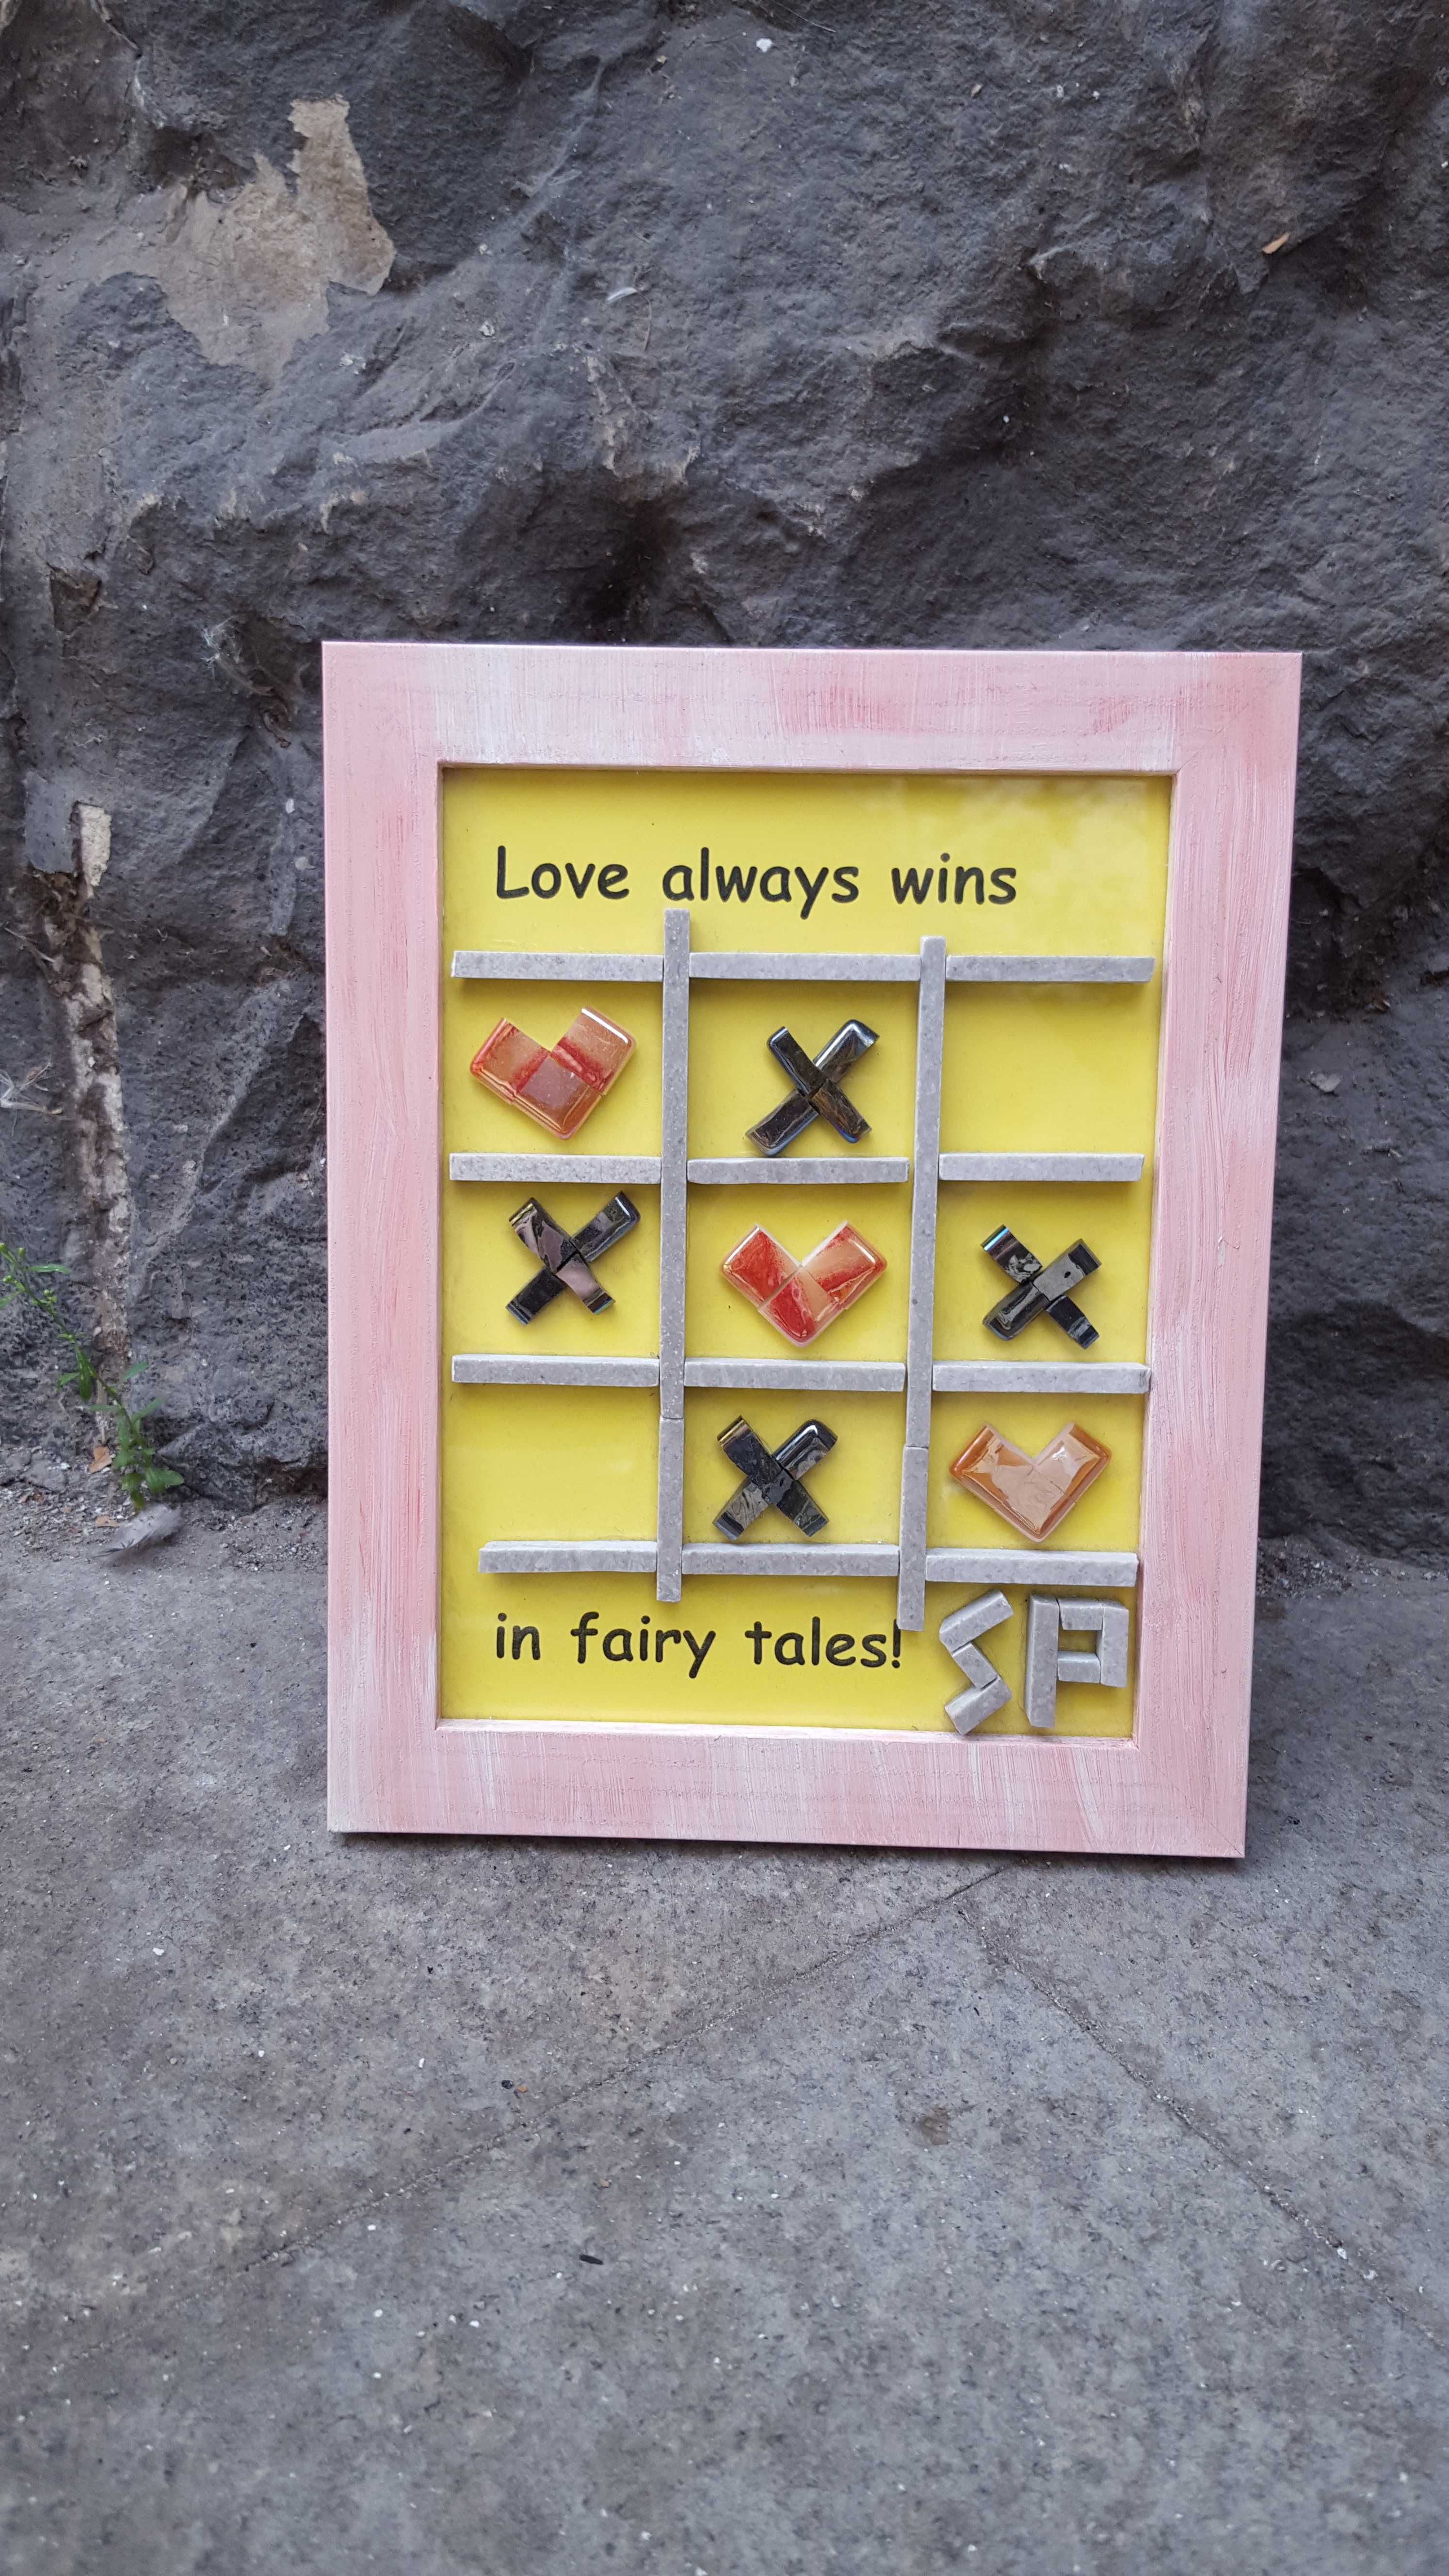 Love wins - Tablou din mozaic de sticla X si zero (inima); handmade